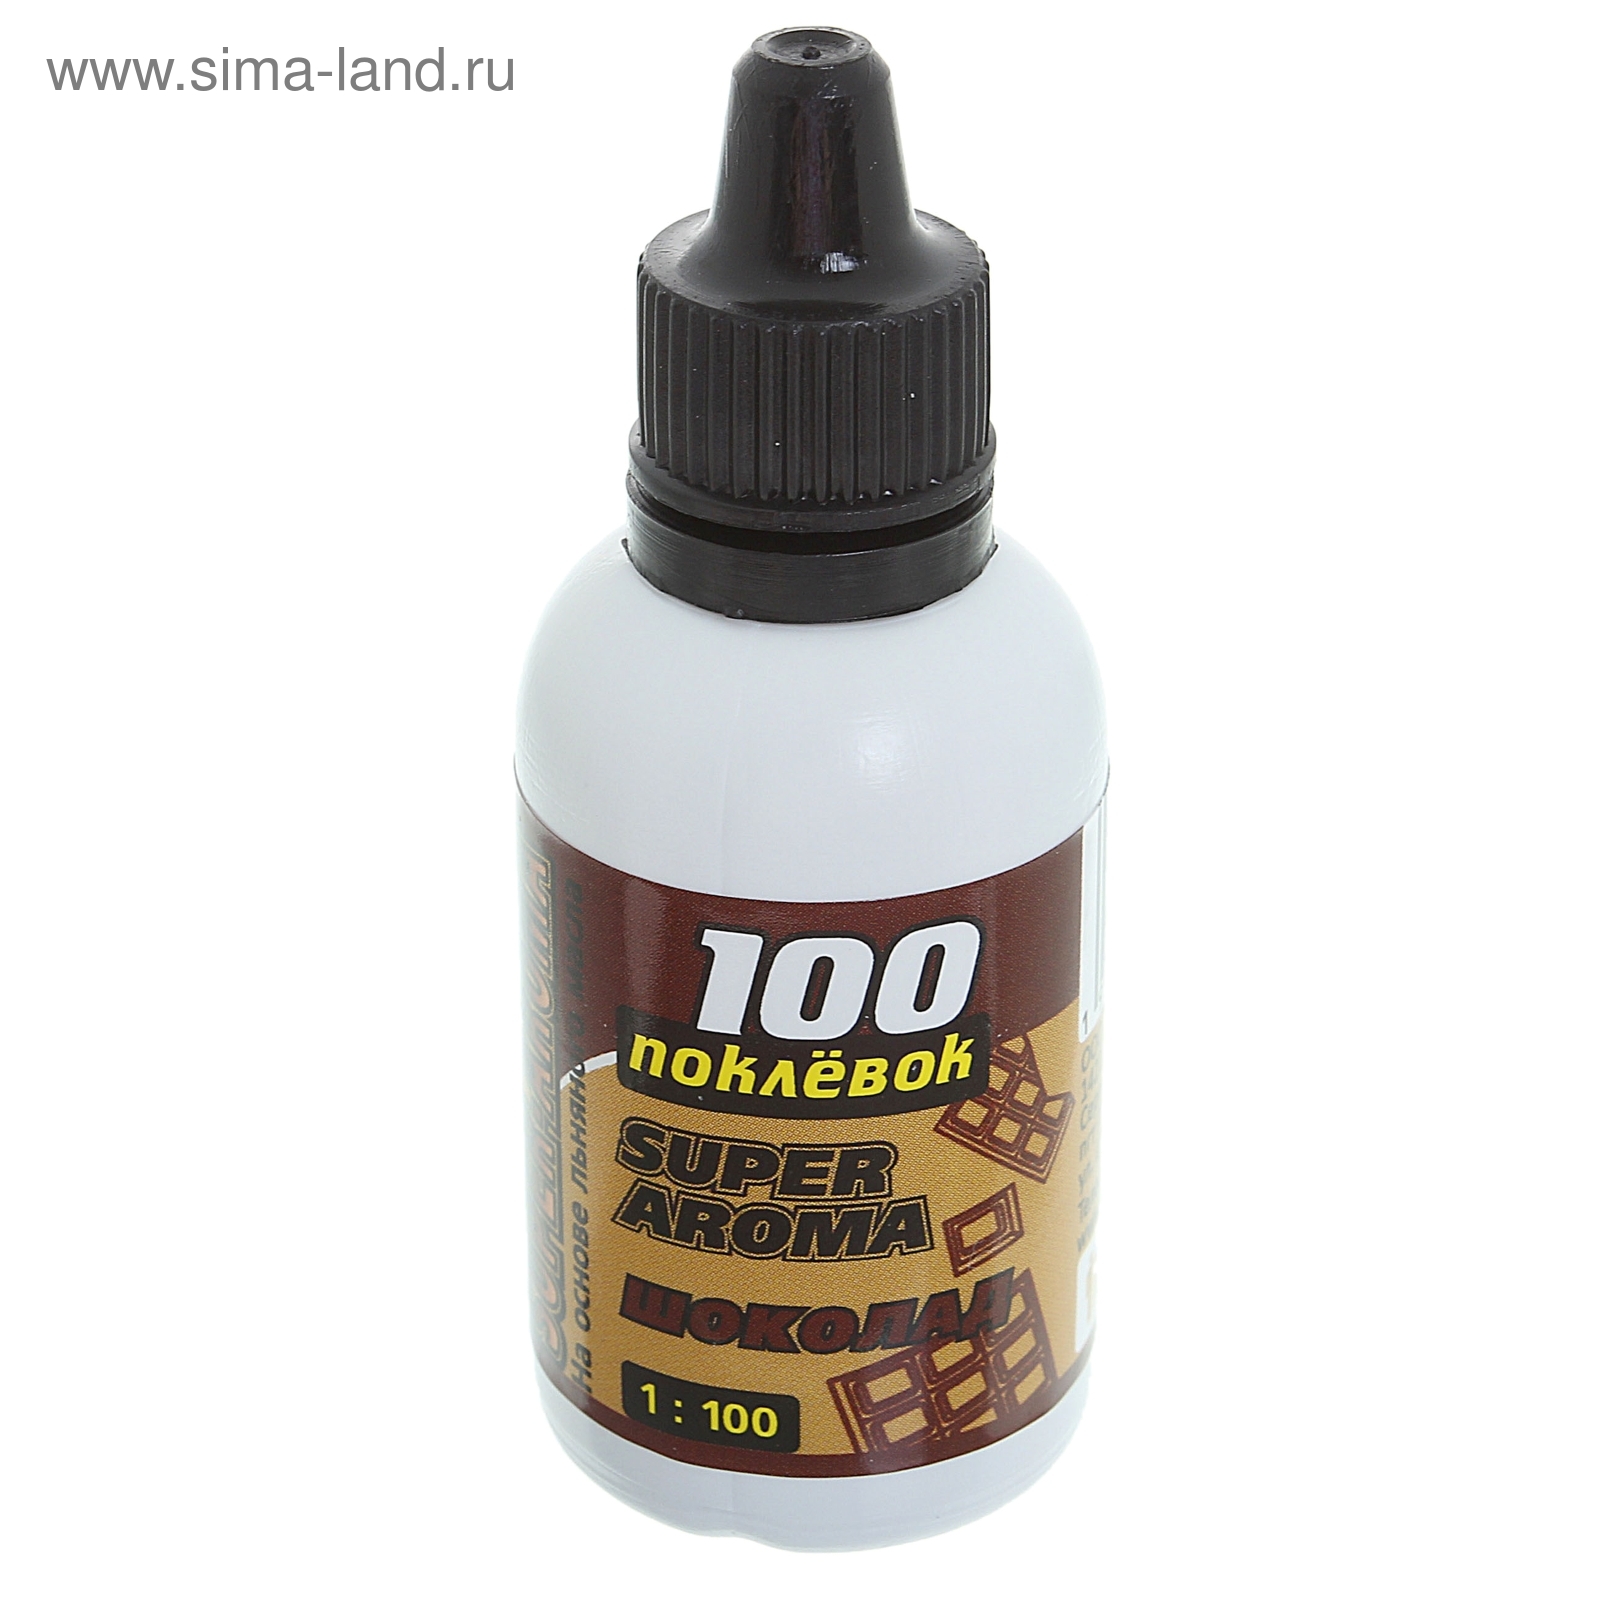 Арома-капли "100 Поклёвок" SUPER AROMA Шоколад, объем 30 мл.